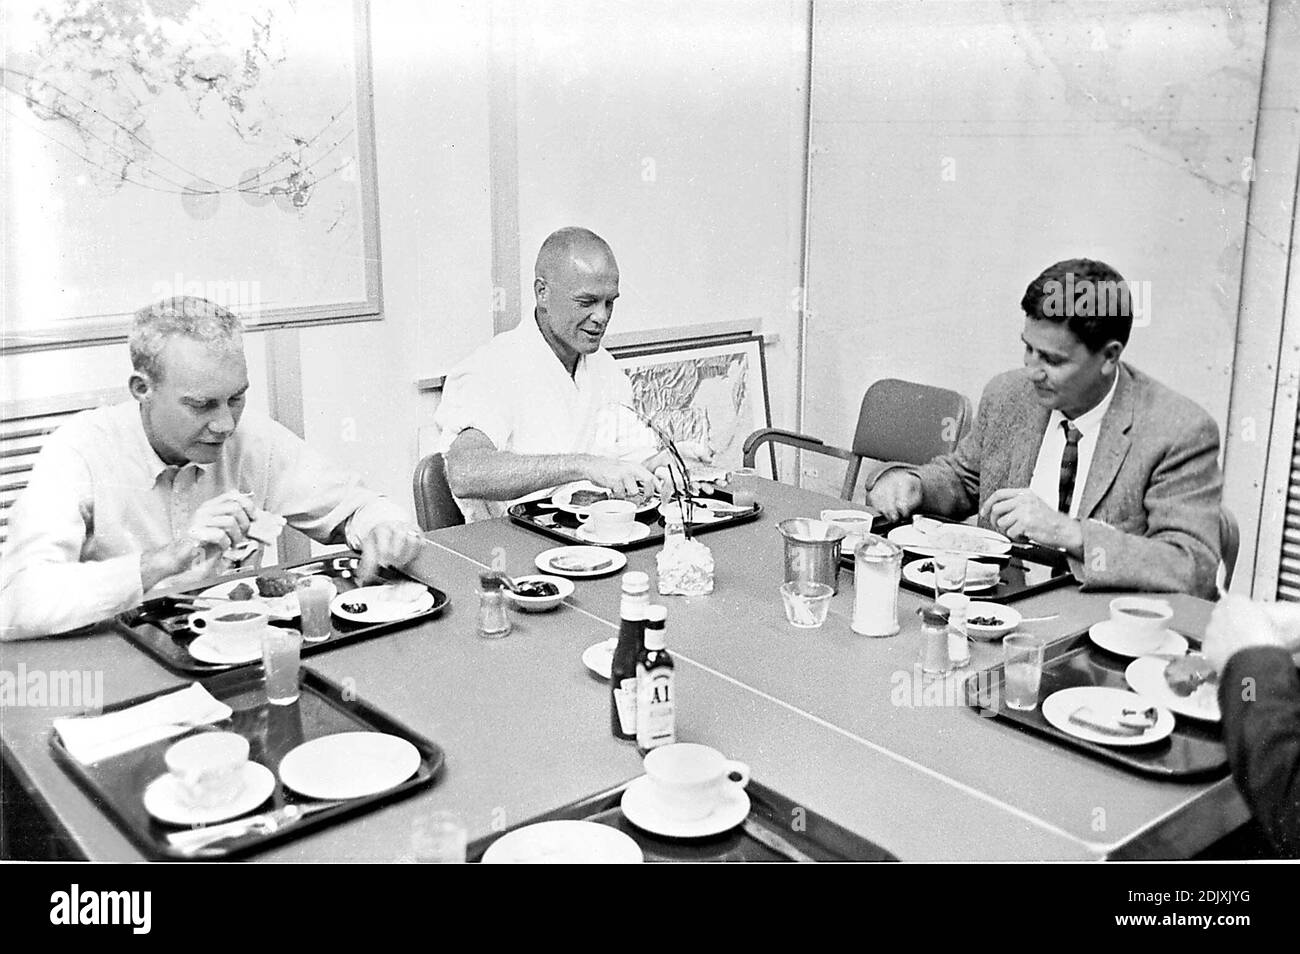 L'astronauta John H. Glenn, Jr. (Centro) mangia la prima colazione il 20 febbraio 1962 prima del suo lancio da Cape Canaveral, Florida in orbita terrestre a bordo di Friendship 7. Il Dr. William K. Douglas è sulla destra. La persona non identificata a sinistra può essere l'astronauta Donald K. 'Deke' Slayton. Foto di NASA via CNP/ABACAPRESS.COM Foto Stock